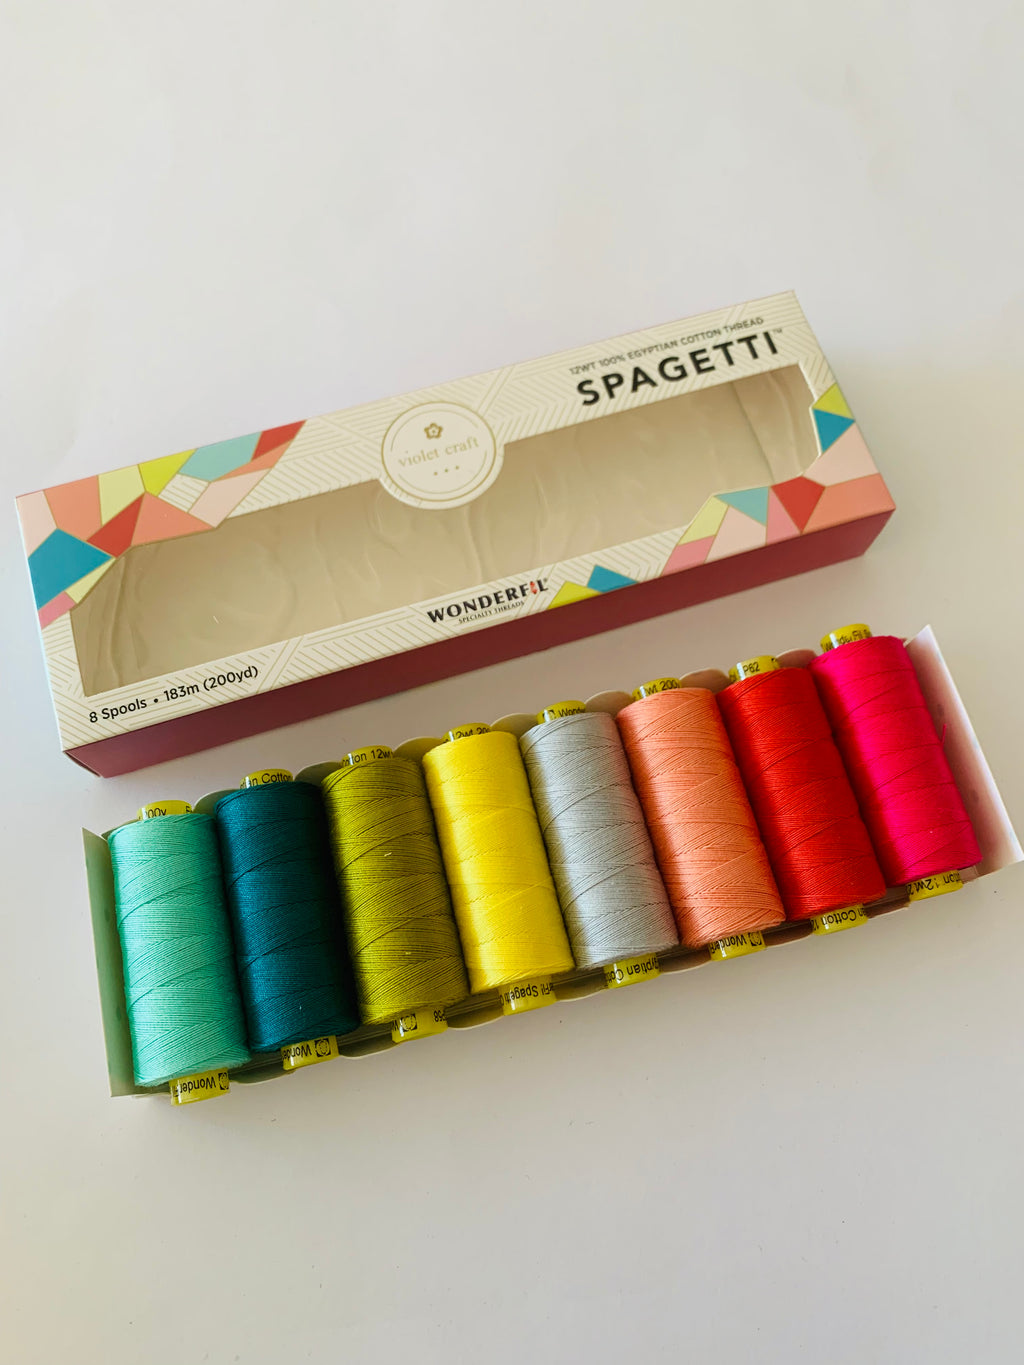 Wonderfil/ Spagetti hand quilting thread: Violet Craft